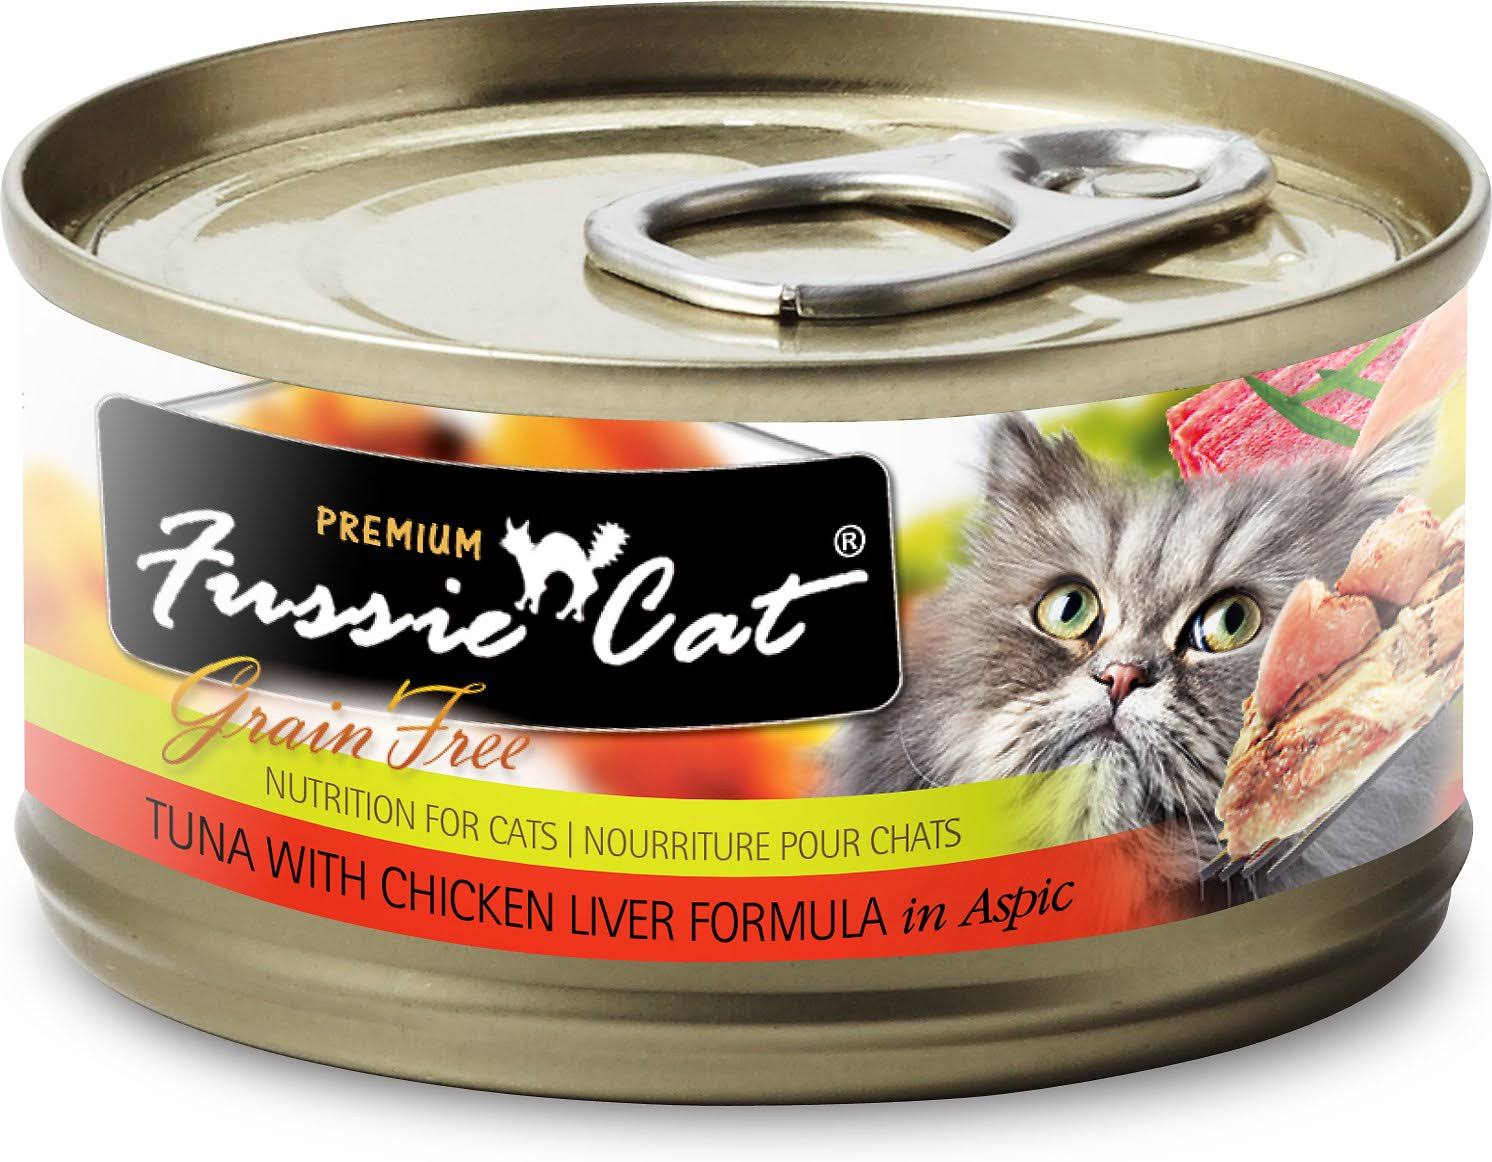 Fussie Cat Tuna with Chicken Liver